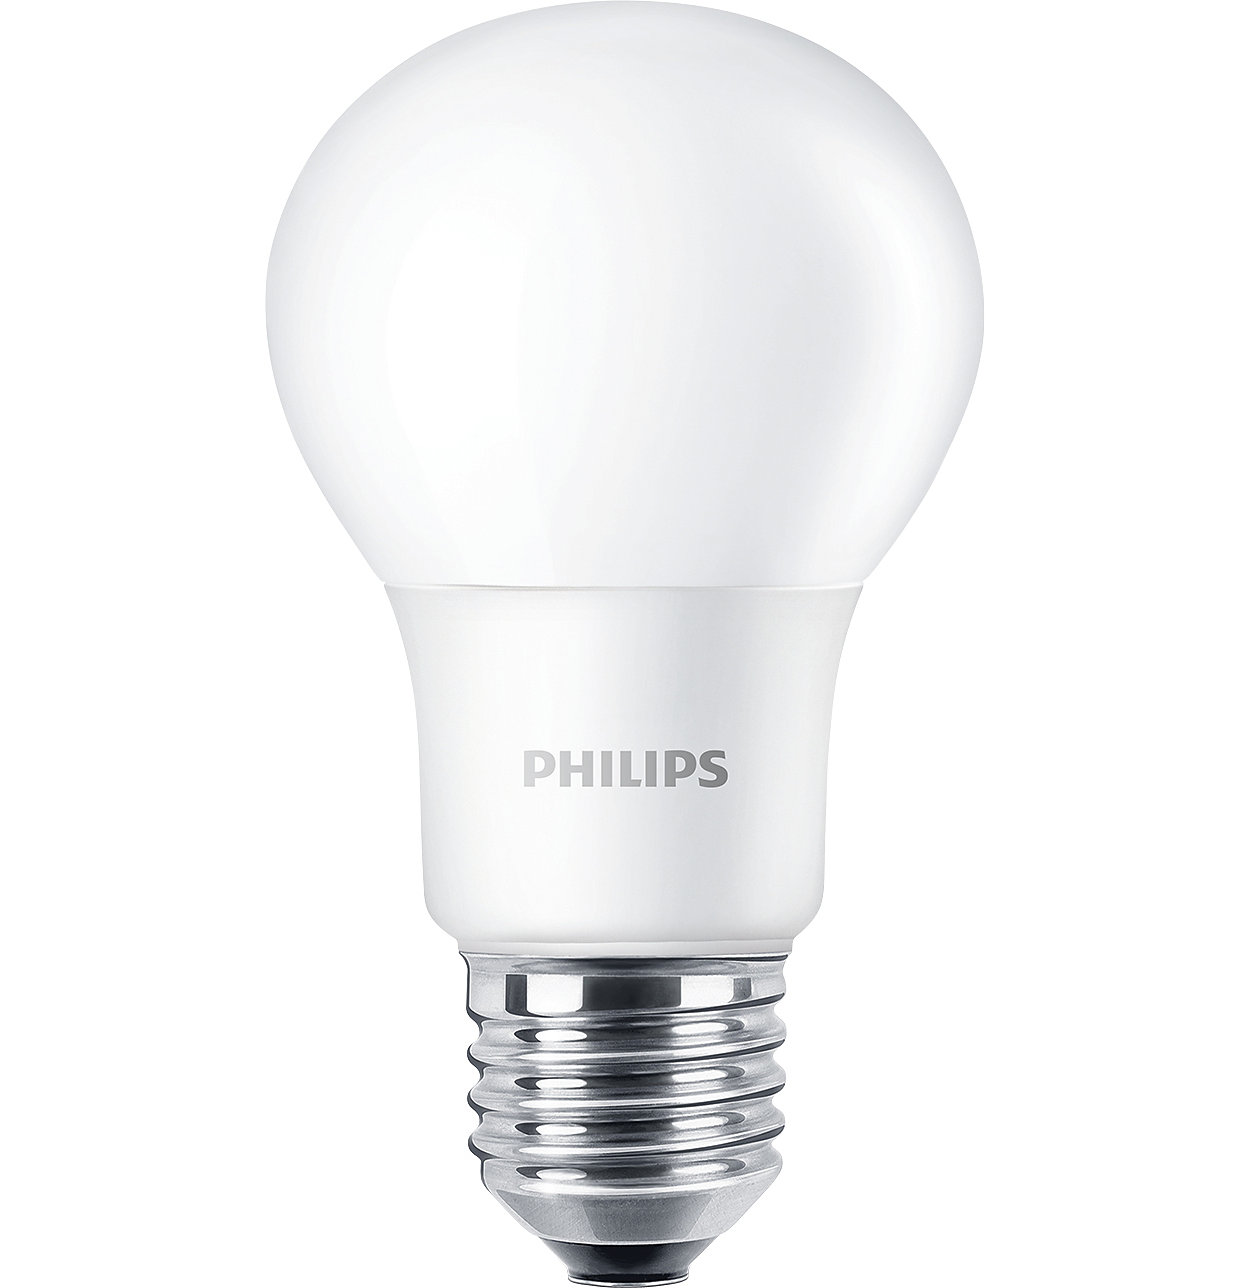 CorePro LED lambalar genel aydınlatma uygulamaları için idealdir. Sağladığı sıcak, halojen benzeri ışık ile LEDspot da, spot aydınlatması için ideal ve trafolarla geniş ölçüde uyumludur.